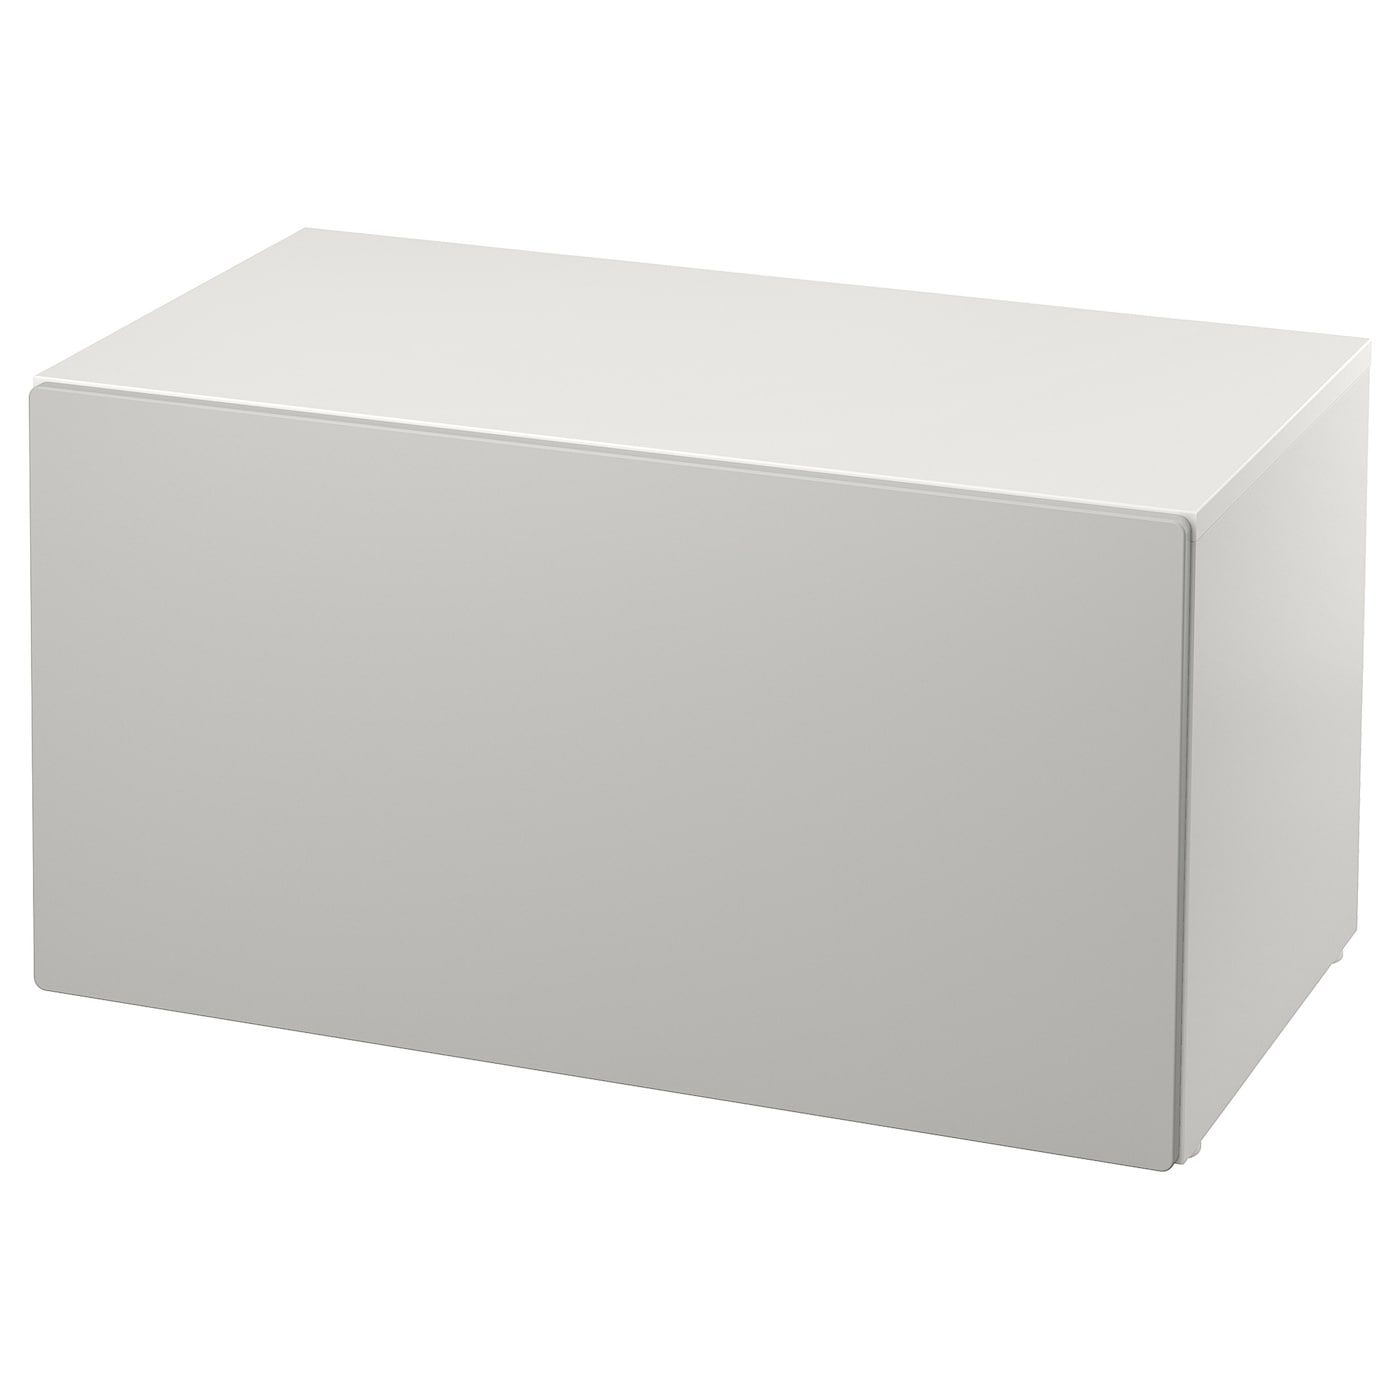 SMÅSTAD Banc, blanc, 90x50x48 cm - IKEA